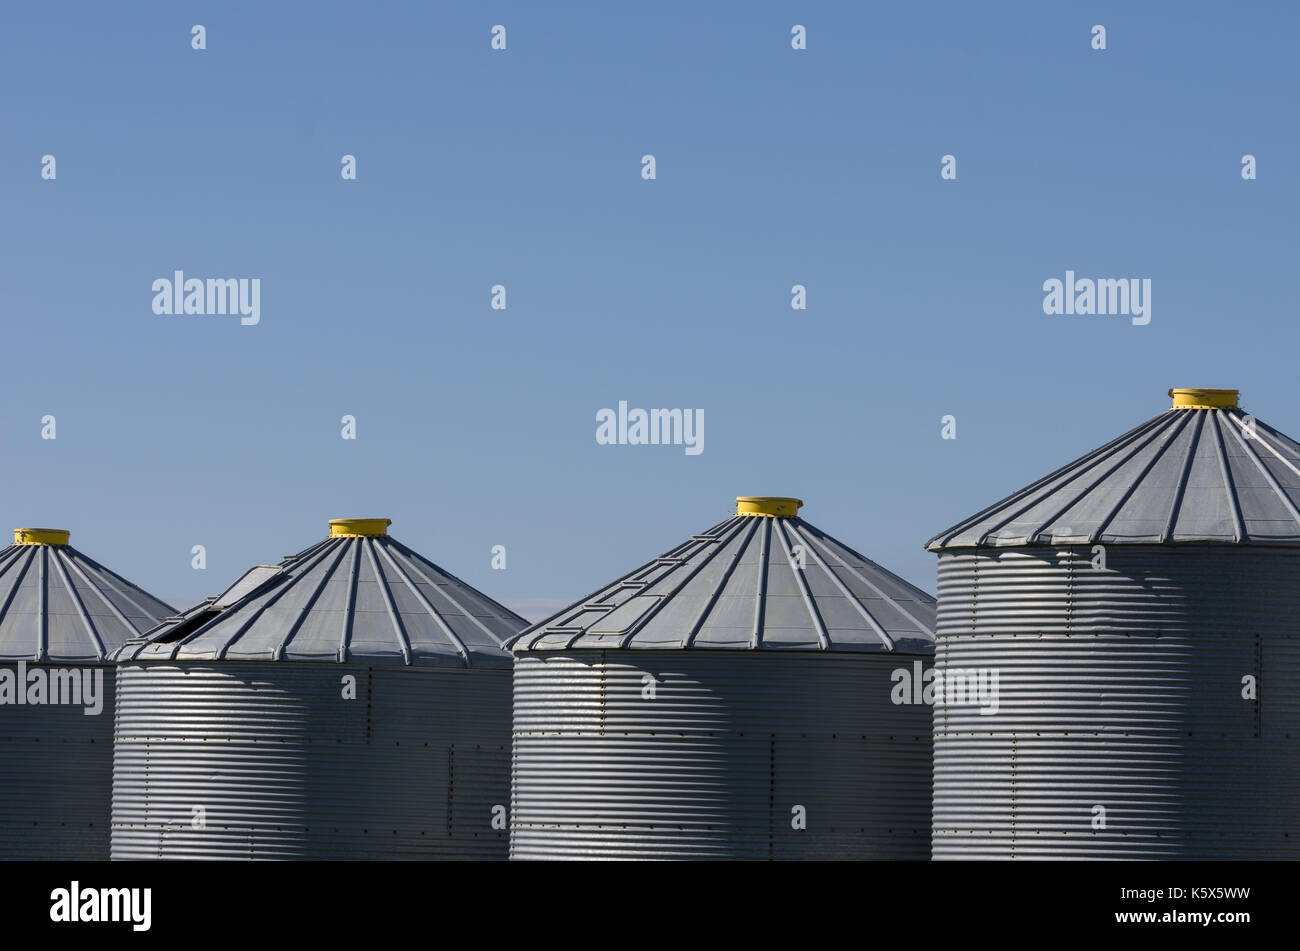 Eine Reihe von grauer Stahl Korn bins mit gelben Dach Kappen für die herbsternte Körner zu speichern bereit Stockfoto